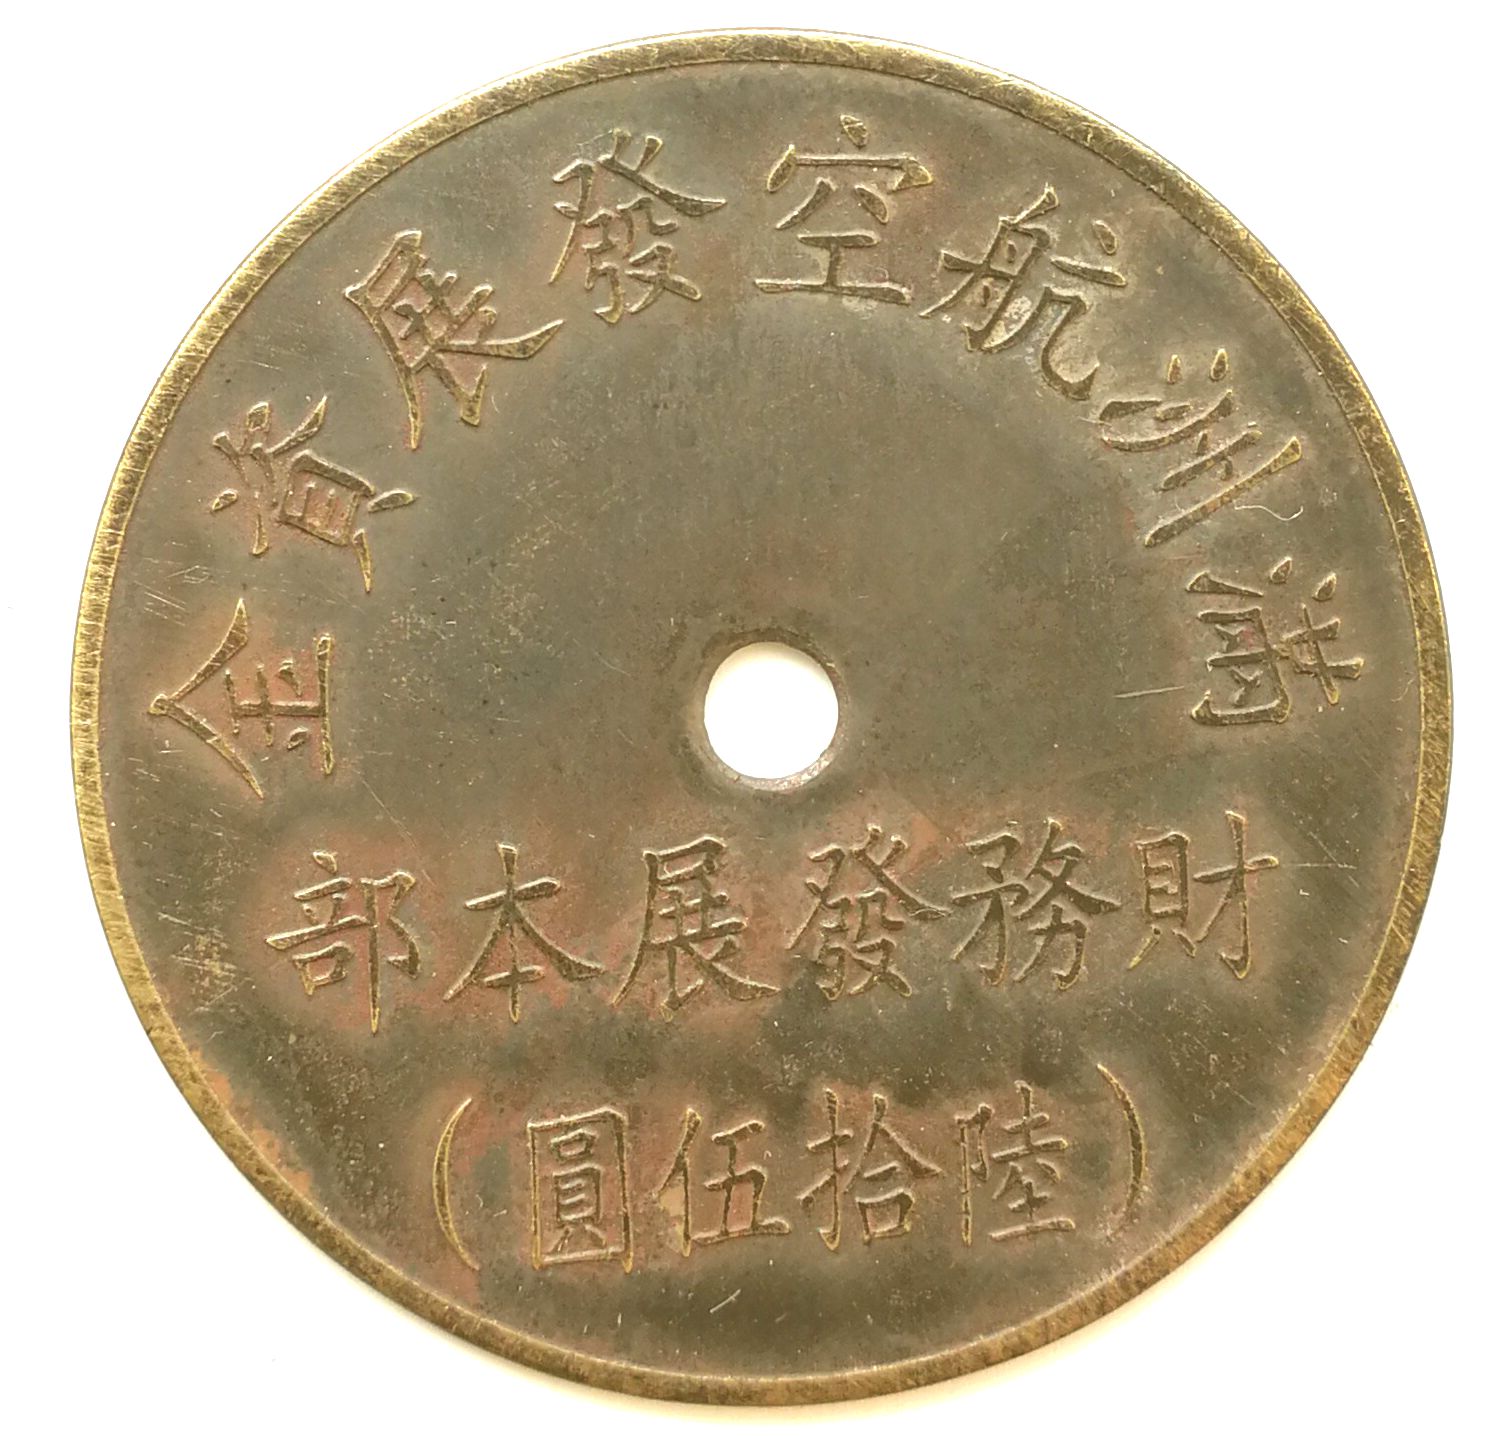 BT487, Manchukuo Aviation Development Fund, 65 Yen Token, 1945